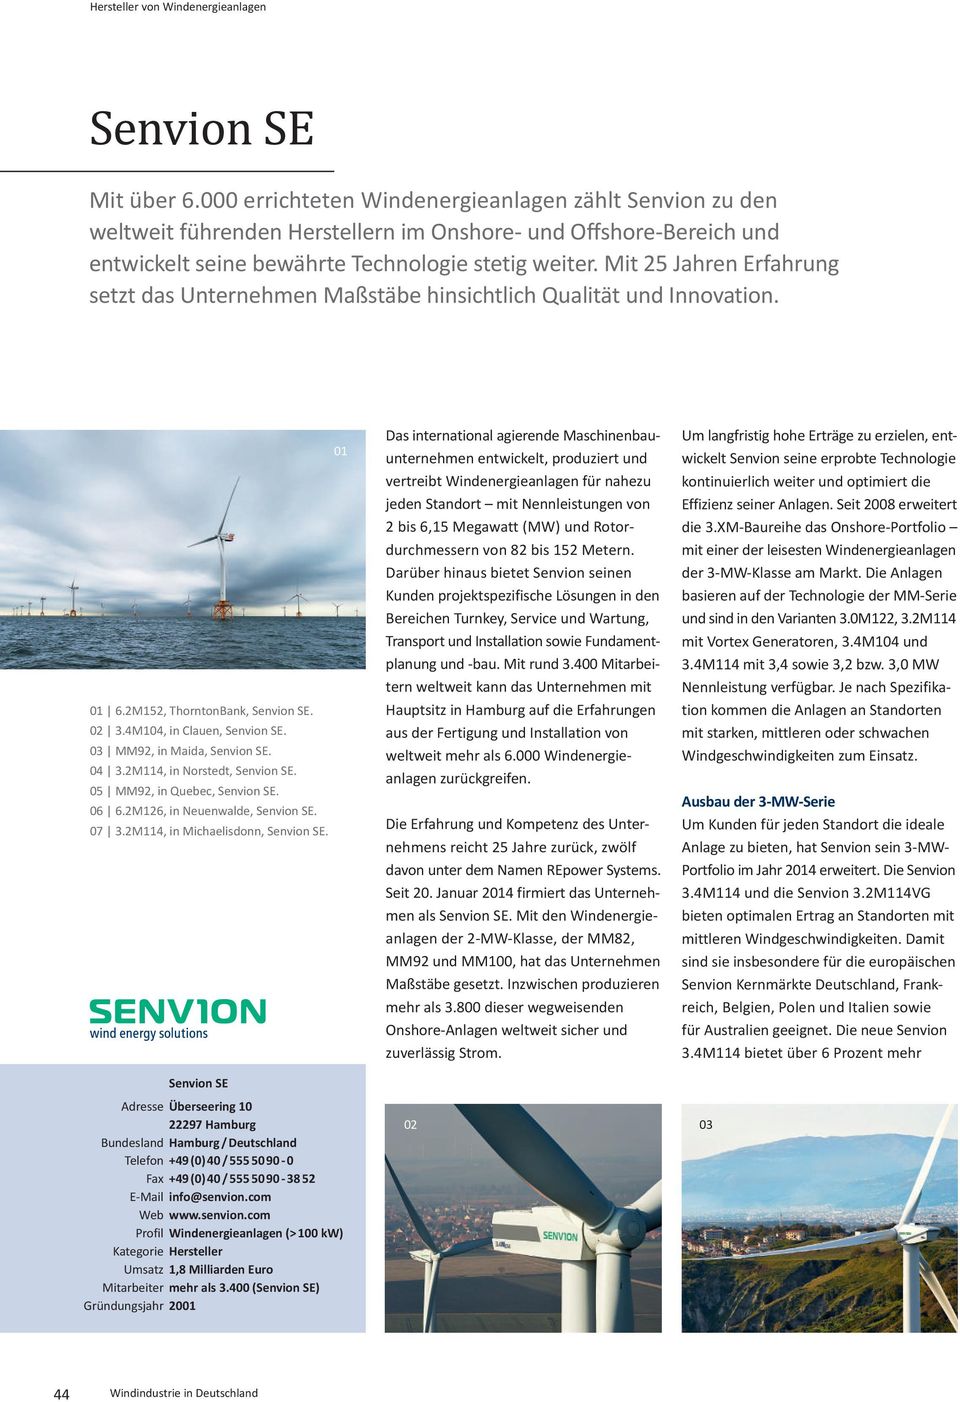 Mit 25 Jahren Erfahrung setzt das Unternehmen Maßstäbe hinsichtlich Qualität und Innovation. 01 01 6.2M152, ThorntonBank, Senvion SE. 02 3.4M104, in Clauen, Senvion SE. 03 MM92, in Maida, Senvion SE.